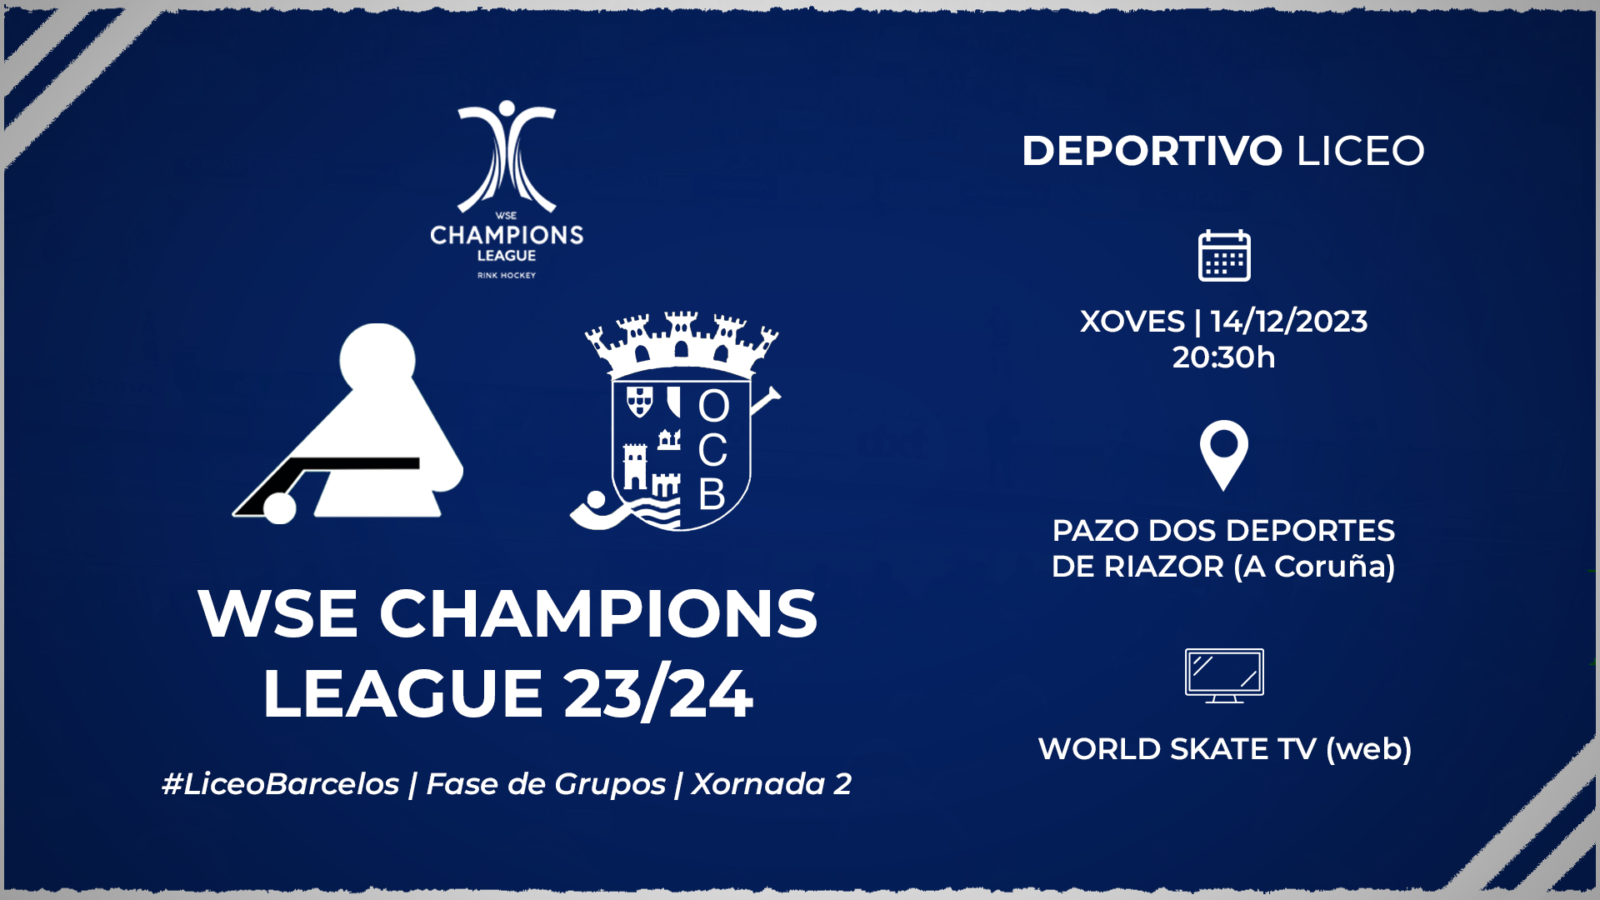 #LiceoBarcelos | ENTRADAS para a xornada 2 da WSE Champions League 23/24